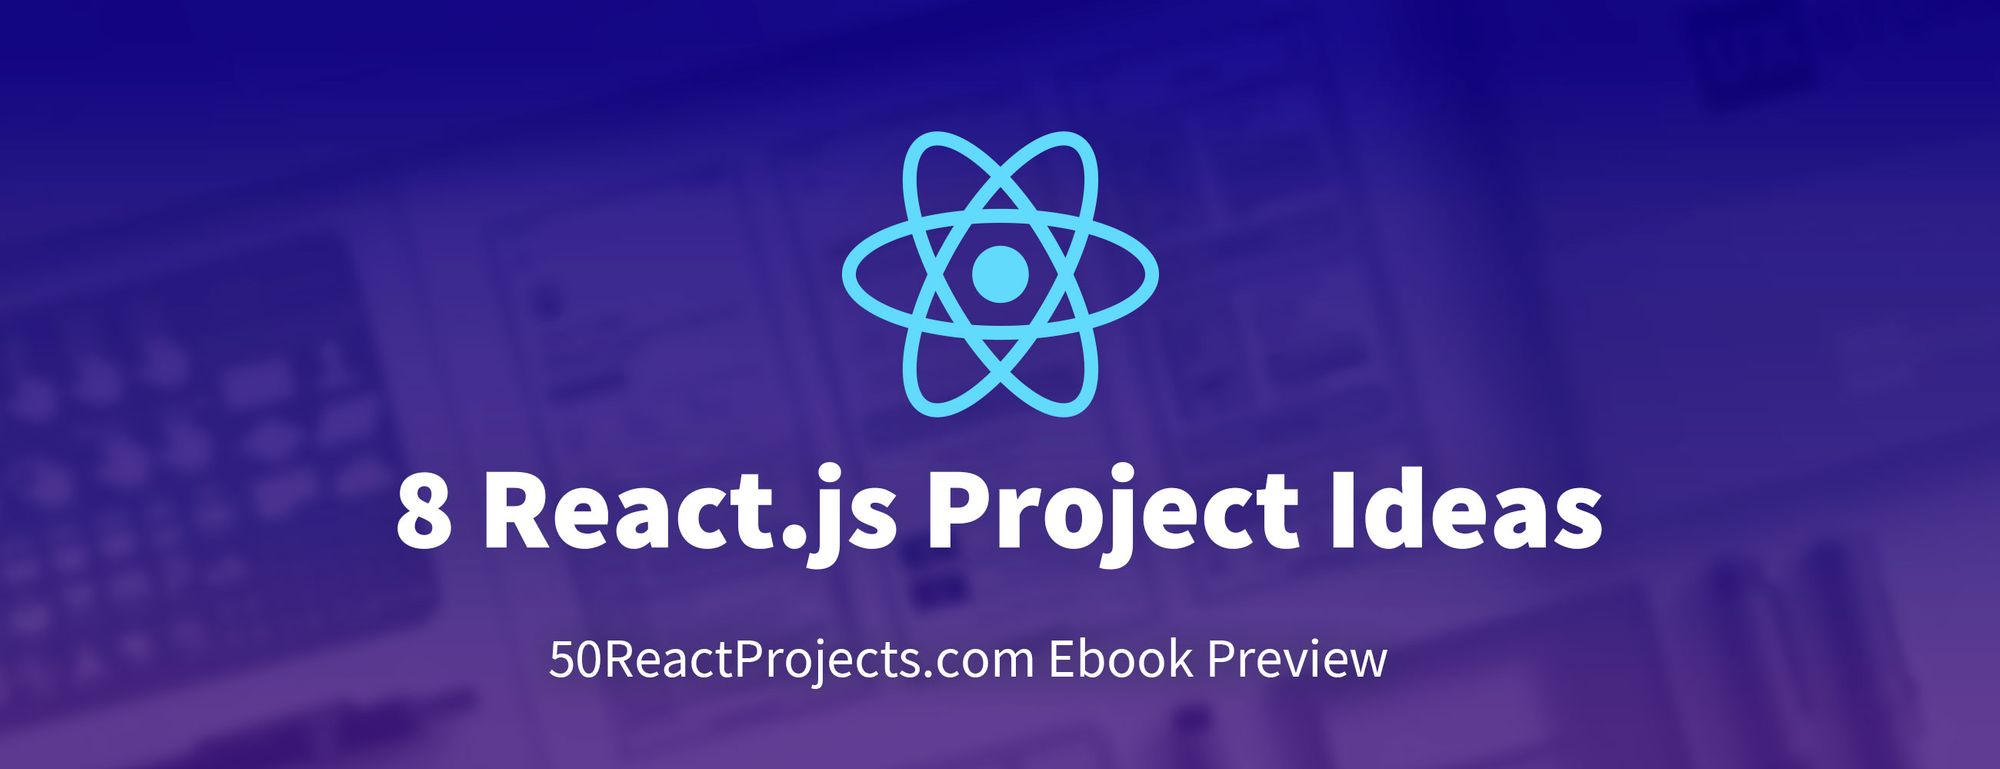 8 Ideas de proyectos en React.js para ayudarte a aprender haciendo